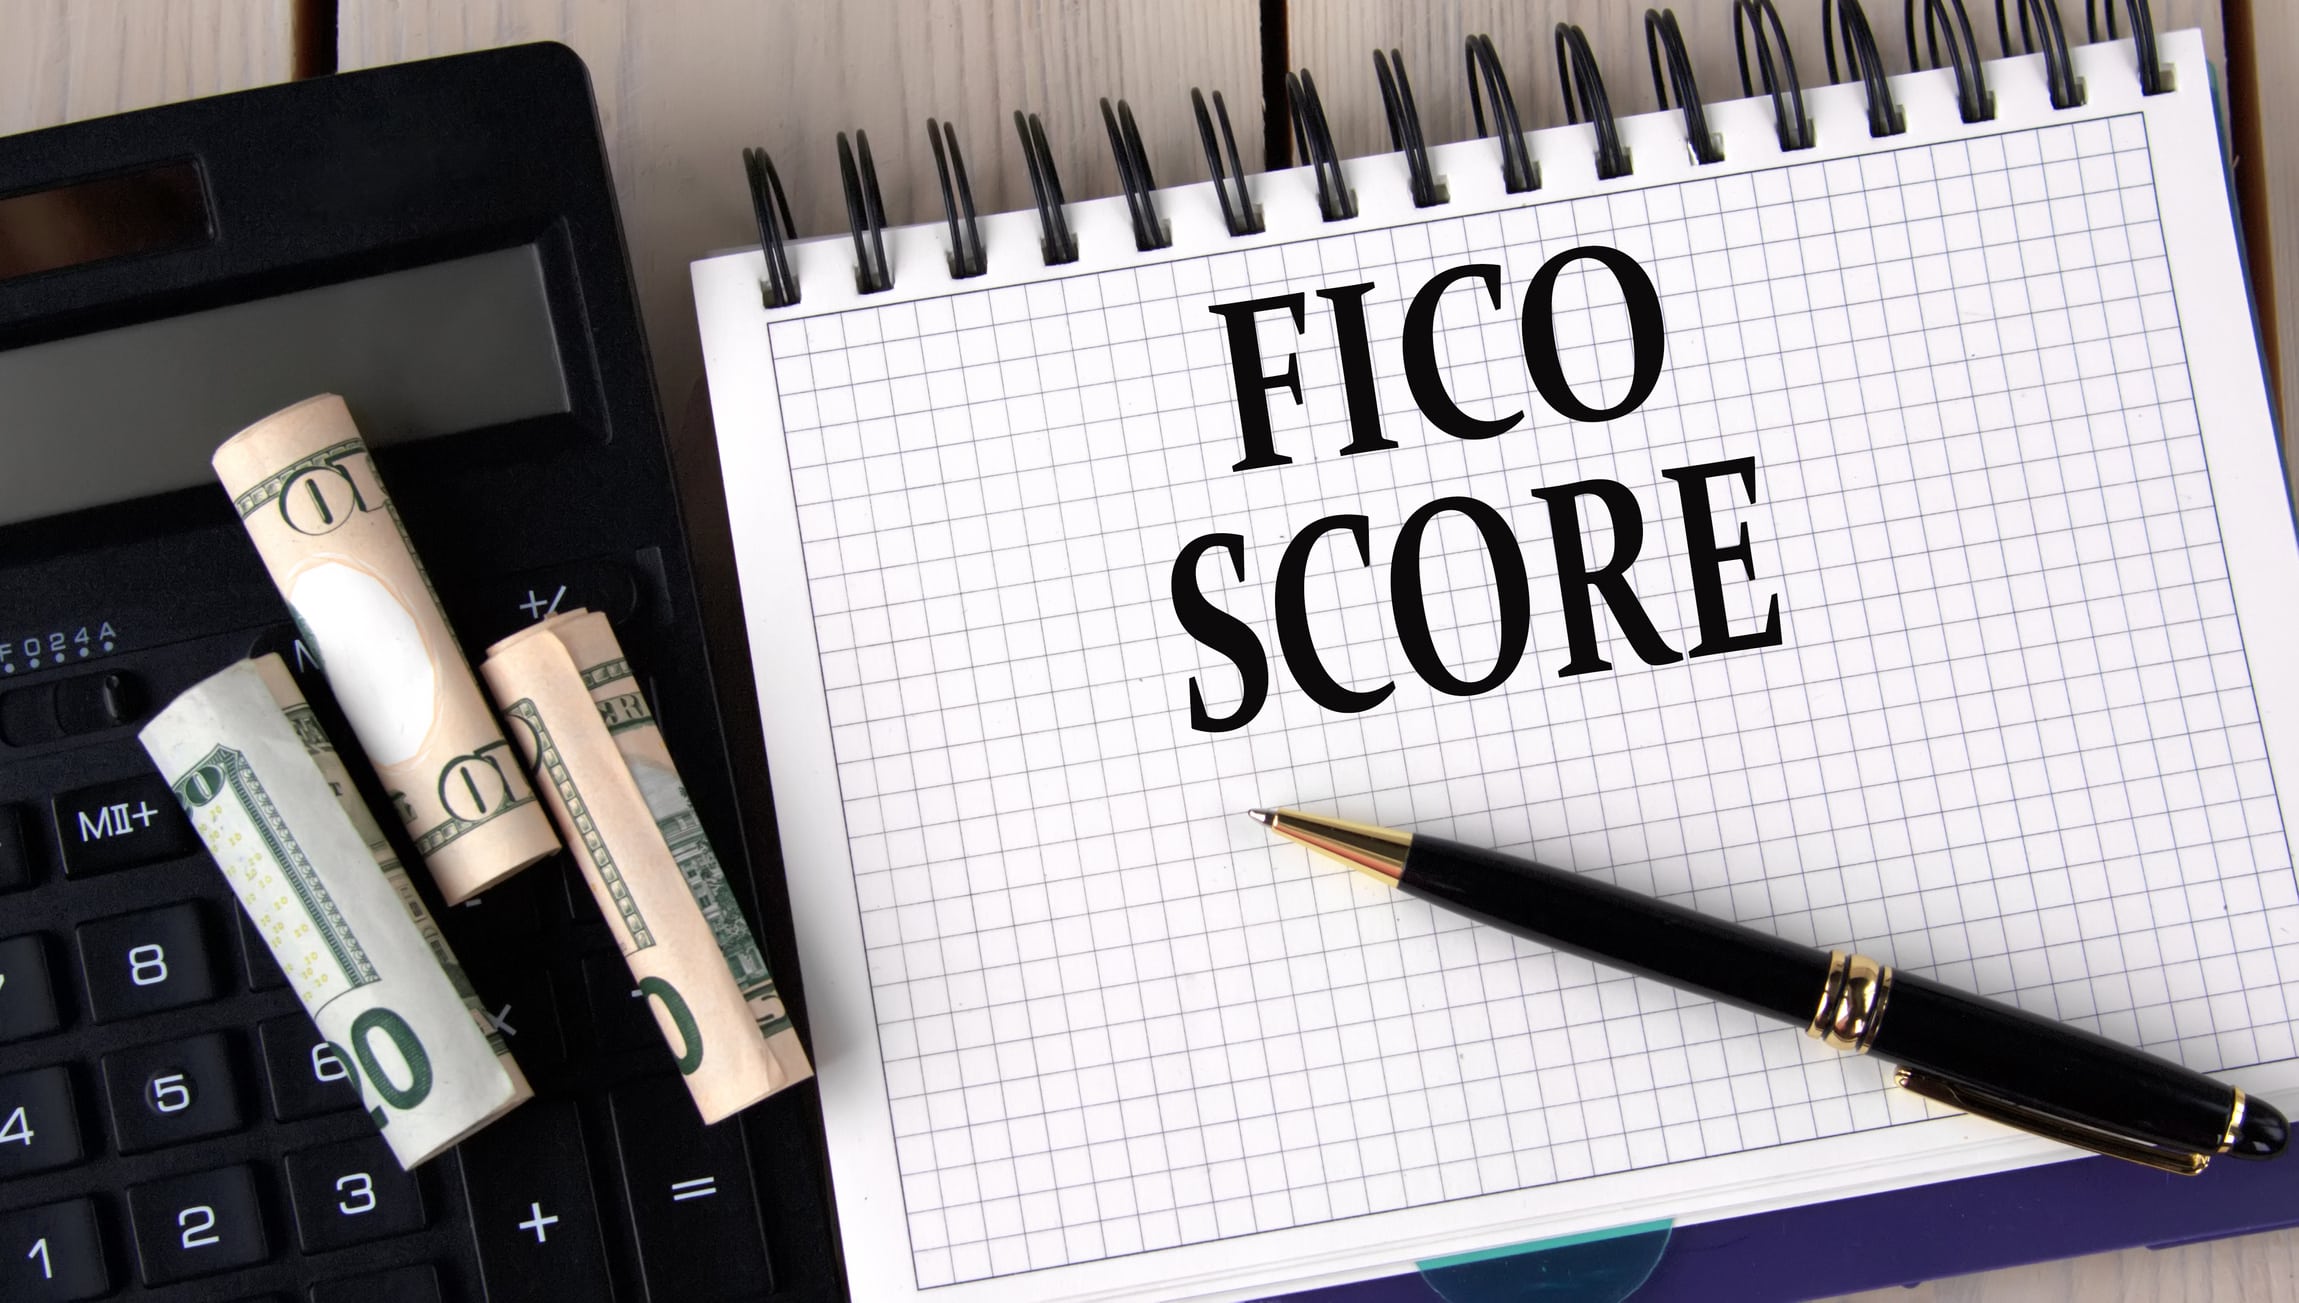 fico score vs credit score